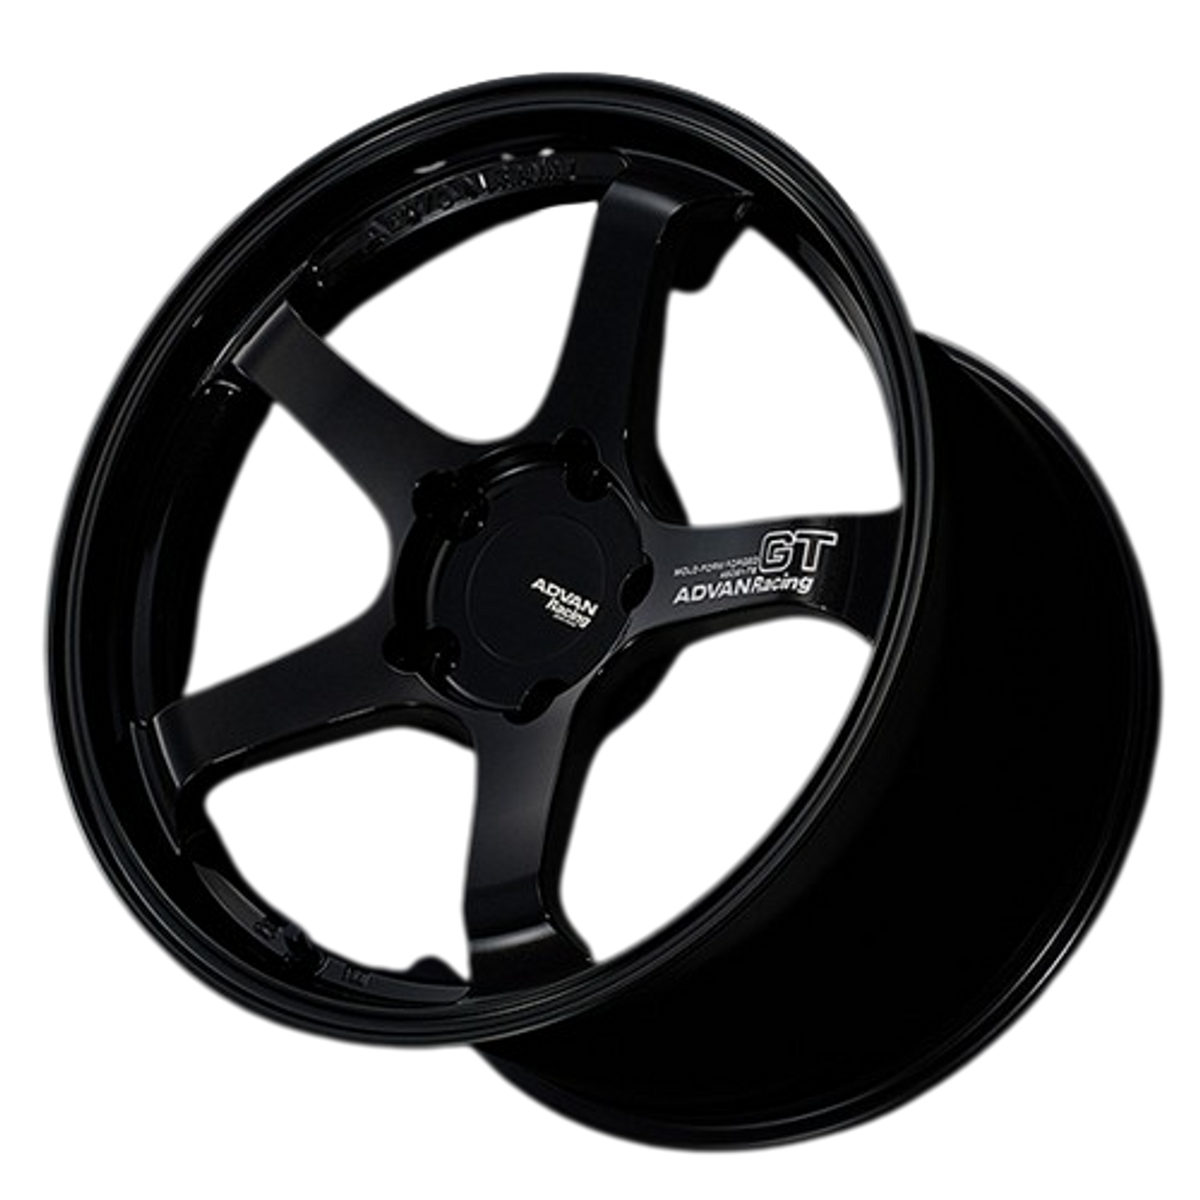 Advan GT Wheel for Porsche - 21&quot; Sizes